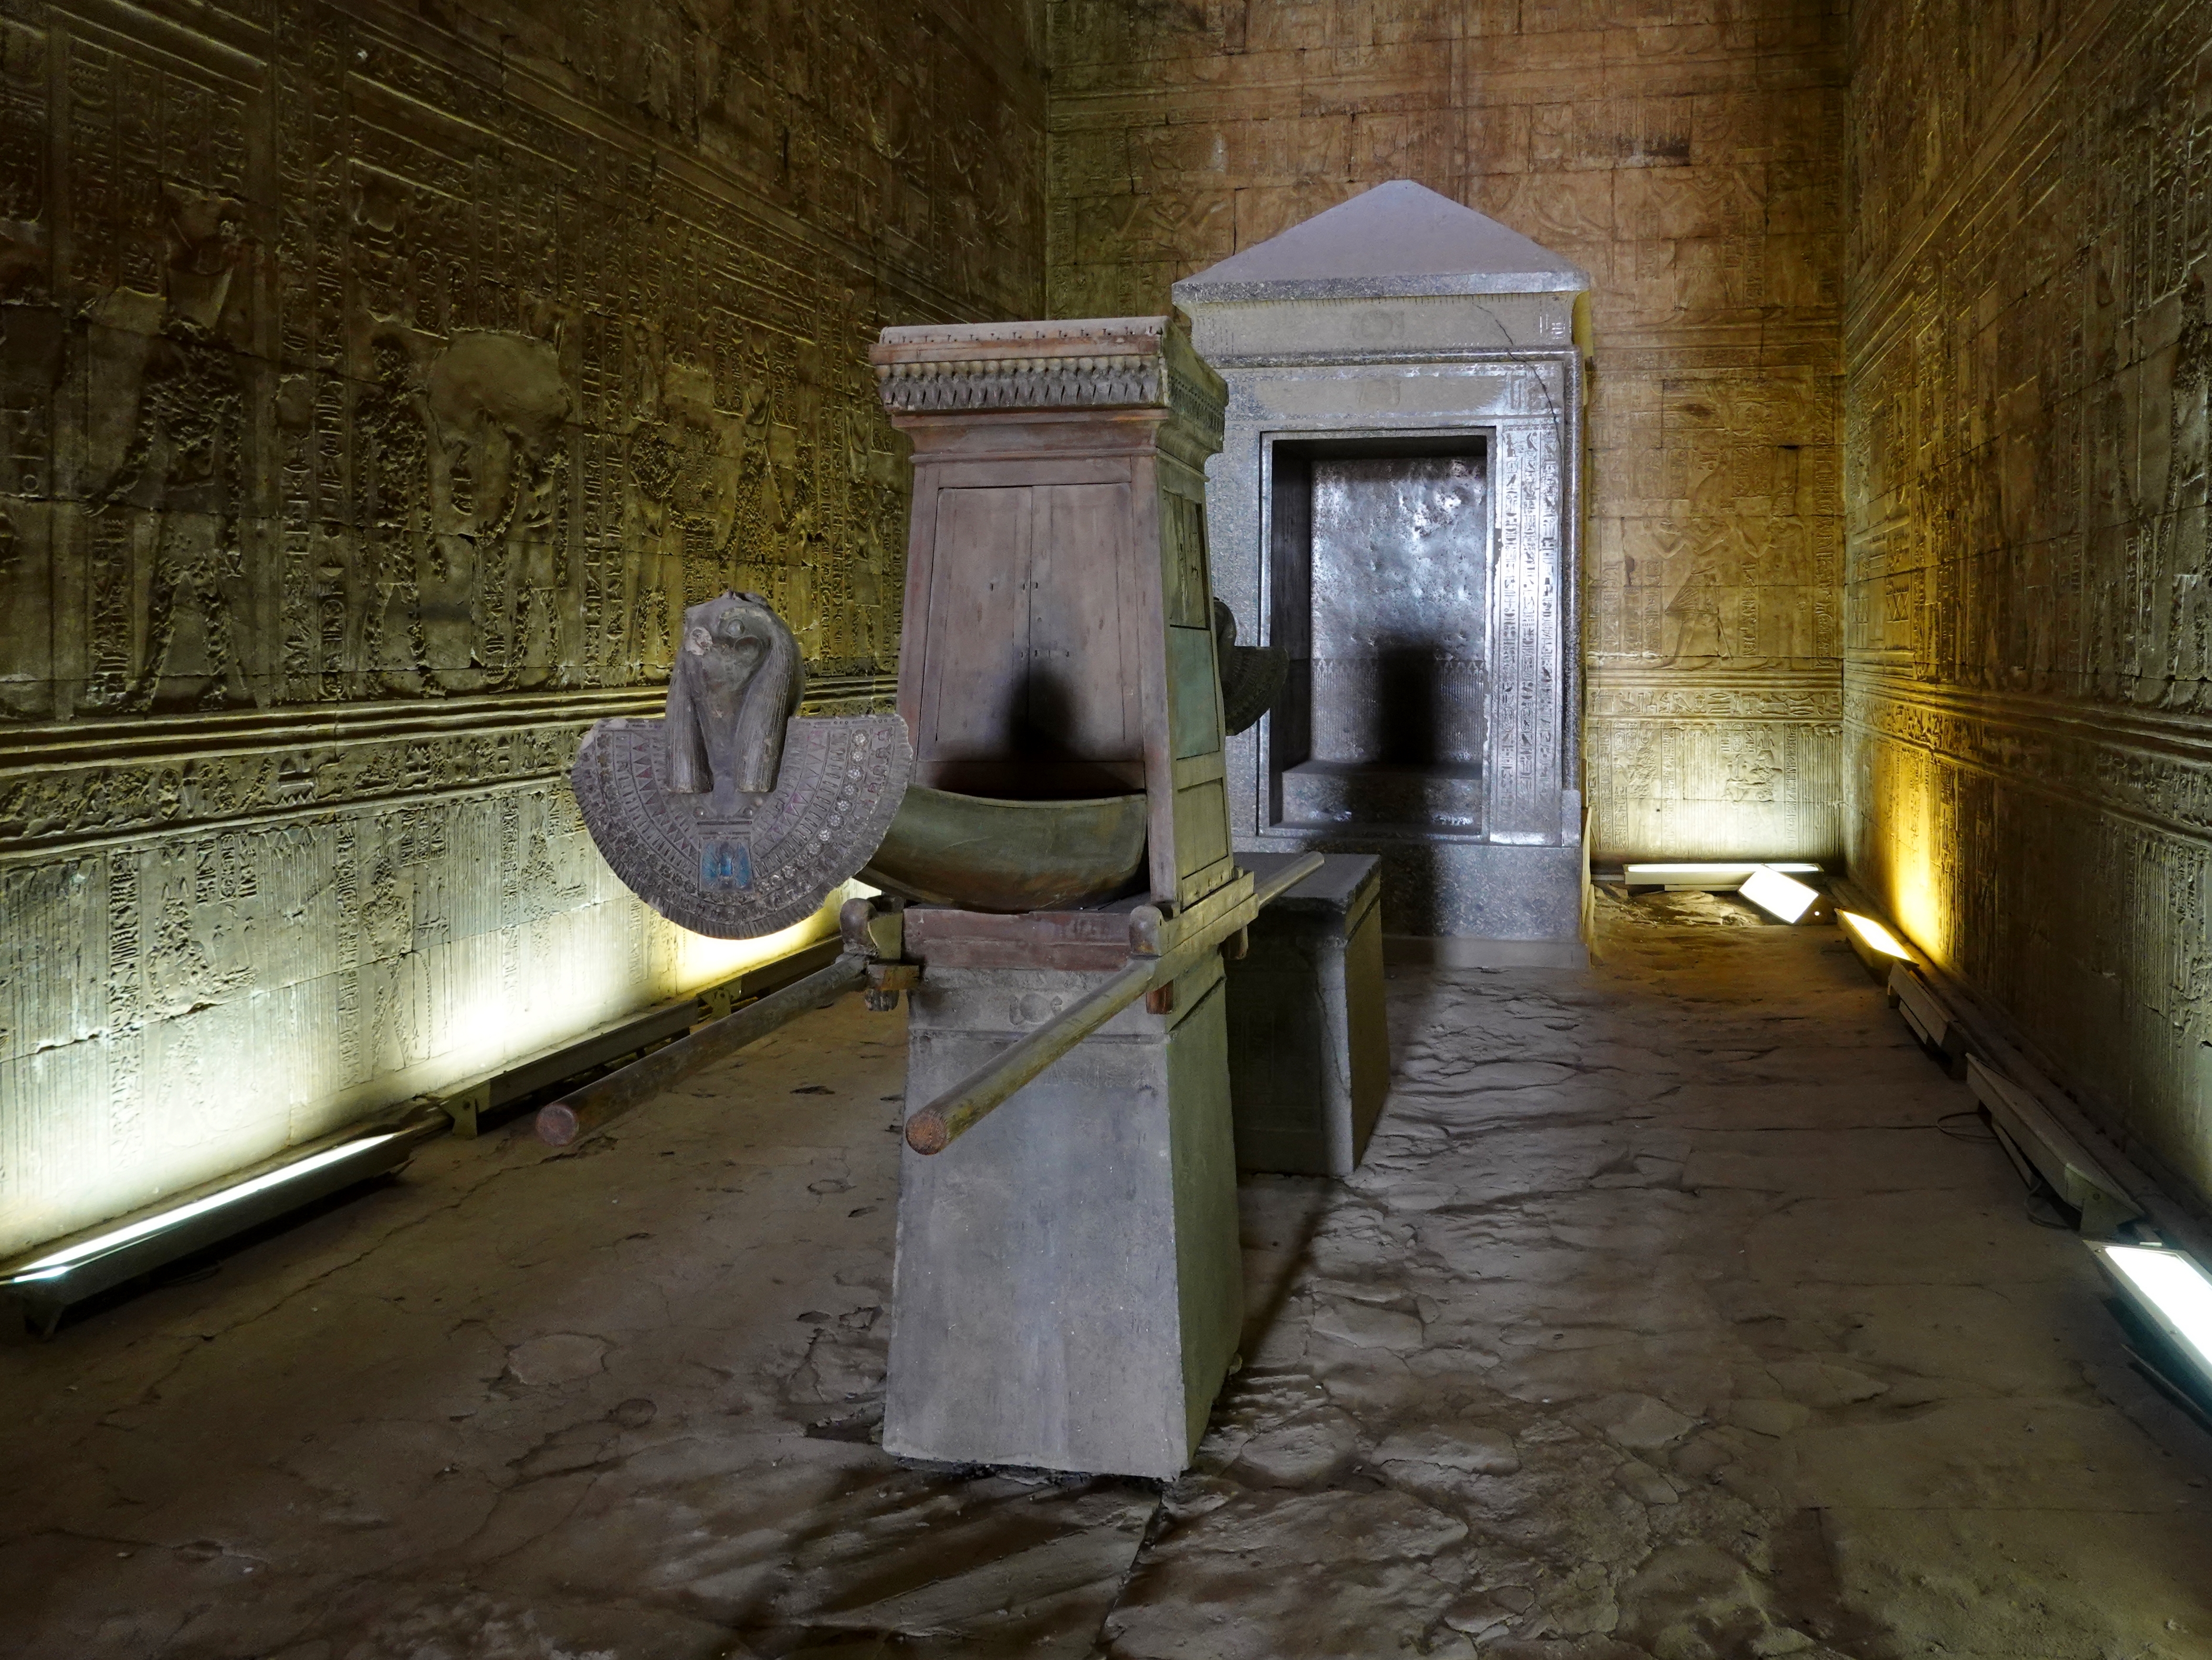 храм эдфу в египте